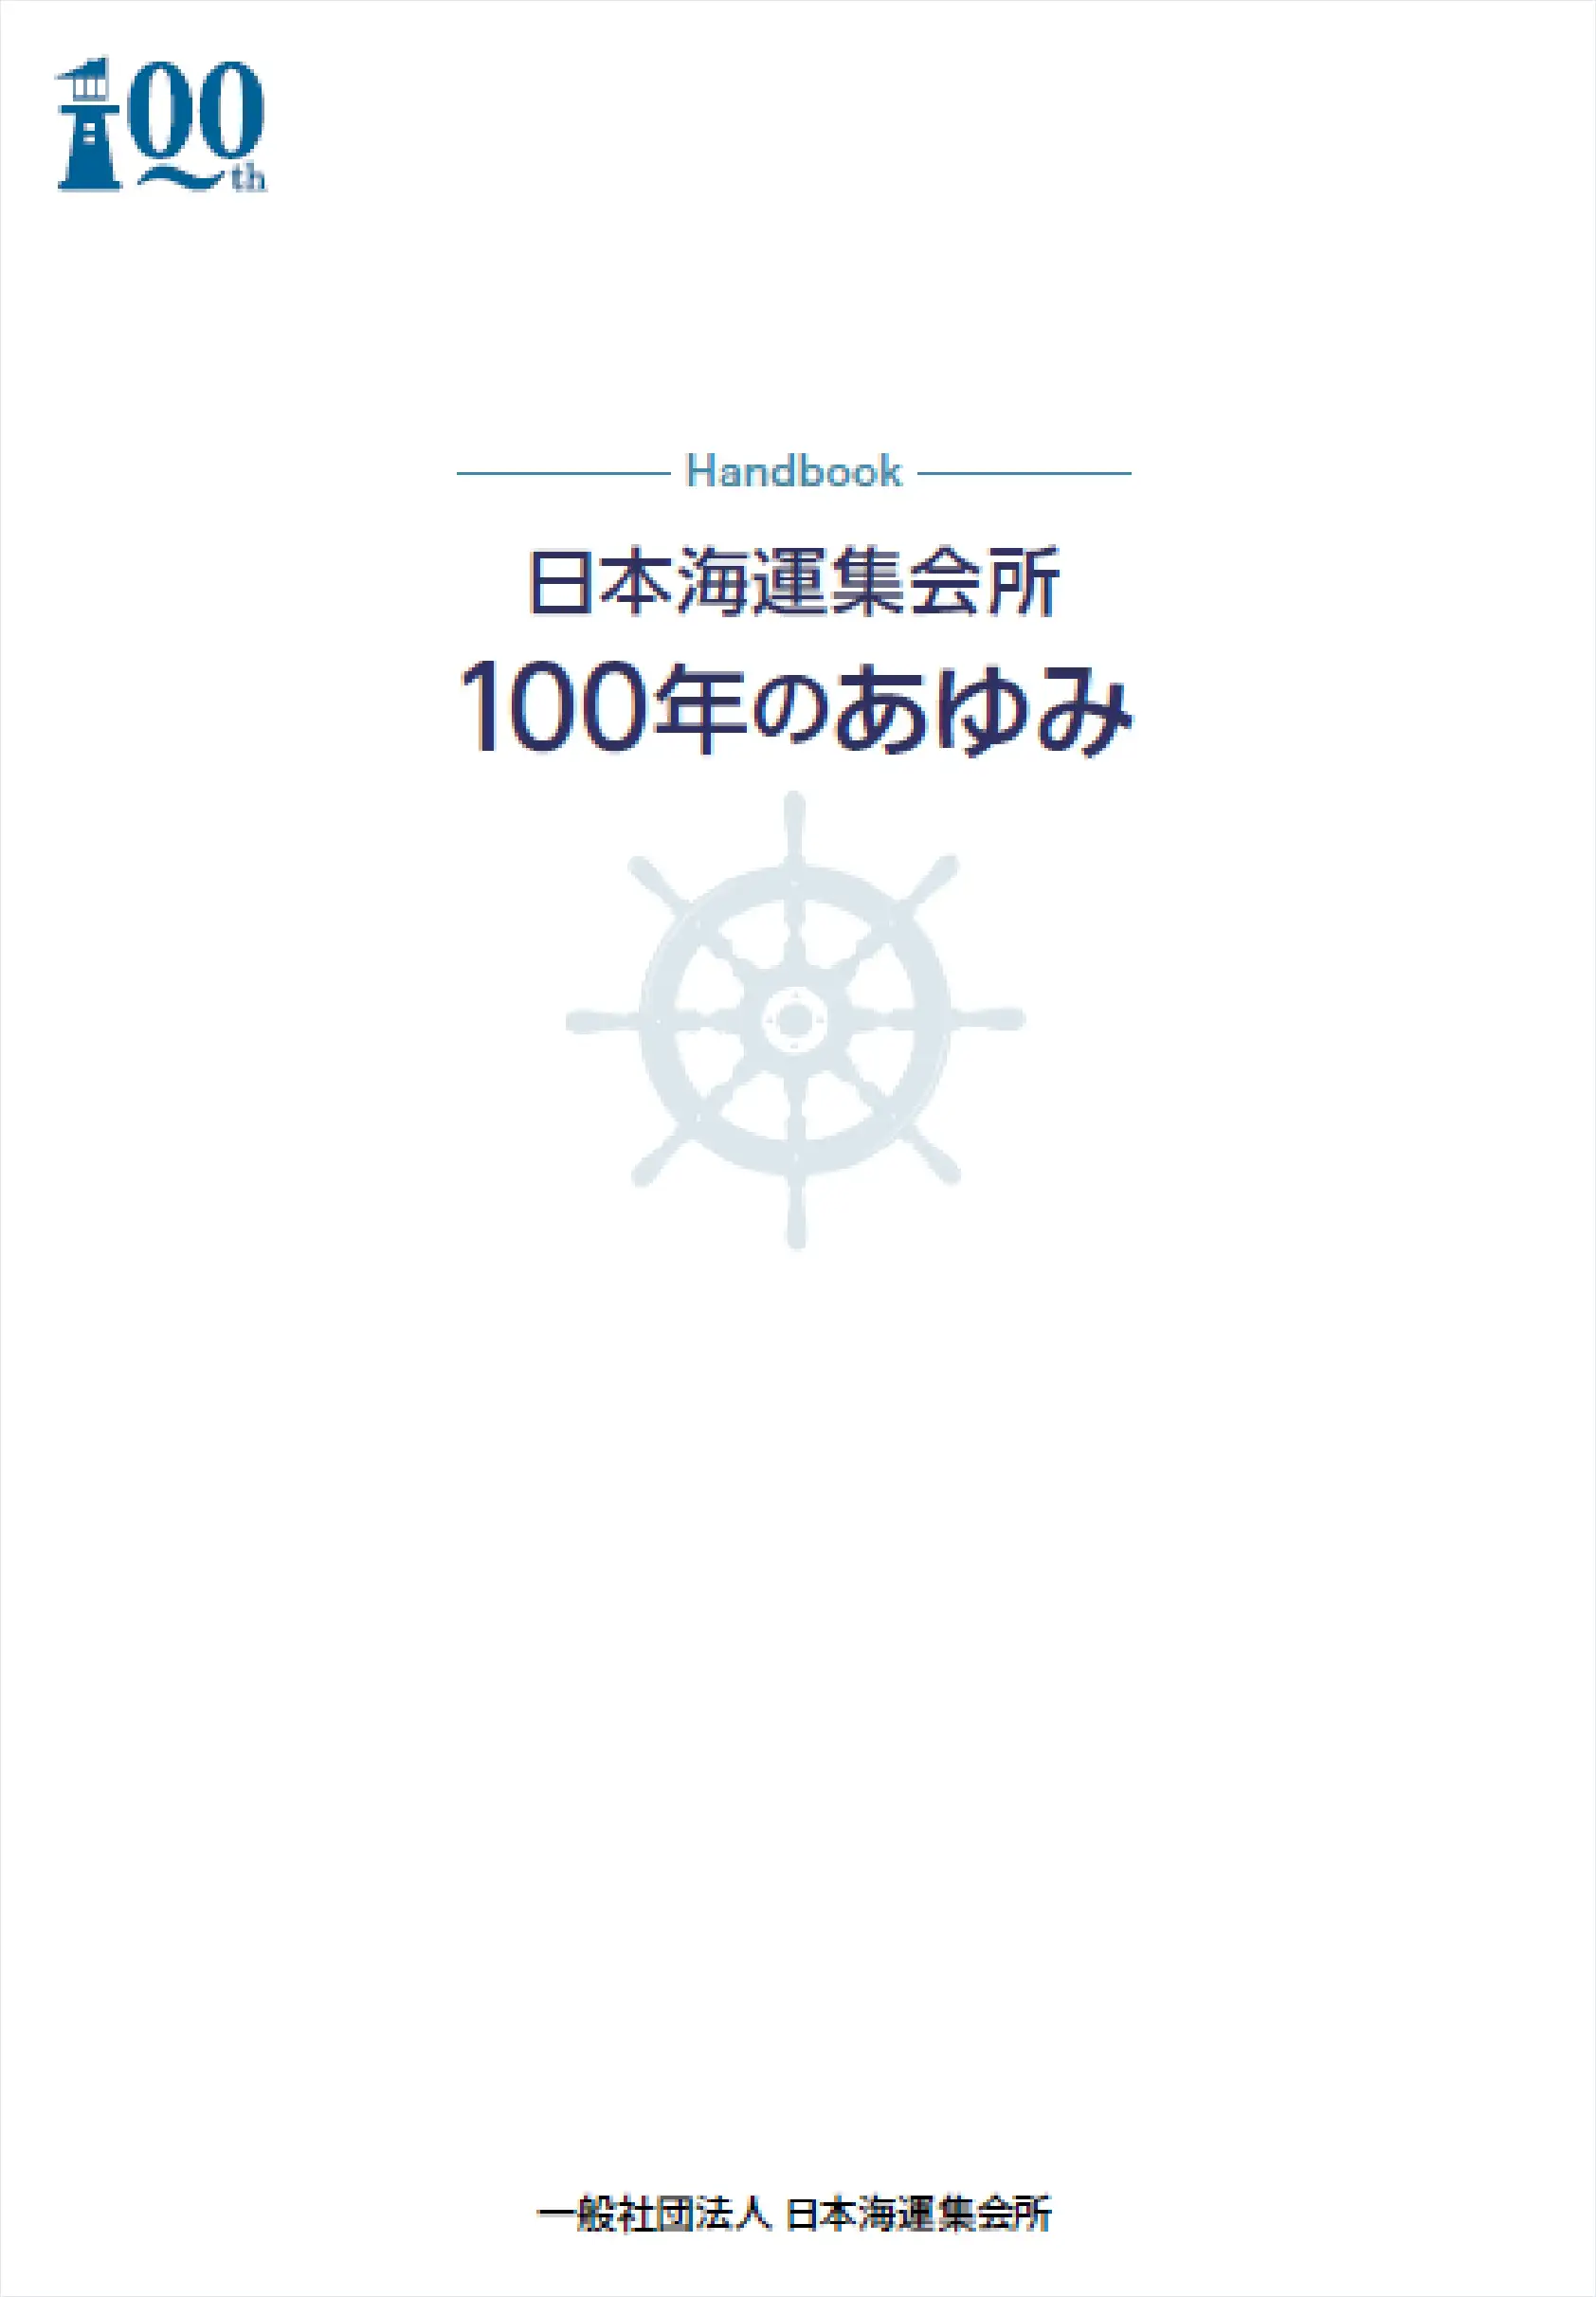 日本海運集会所　100年のあゆみ（PDF）